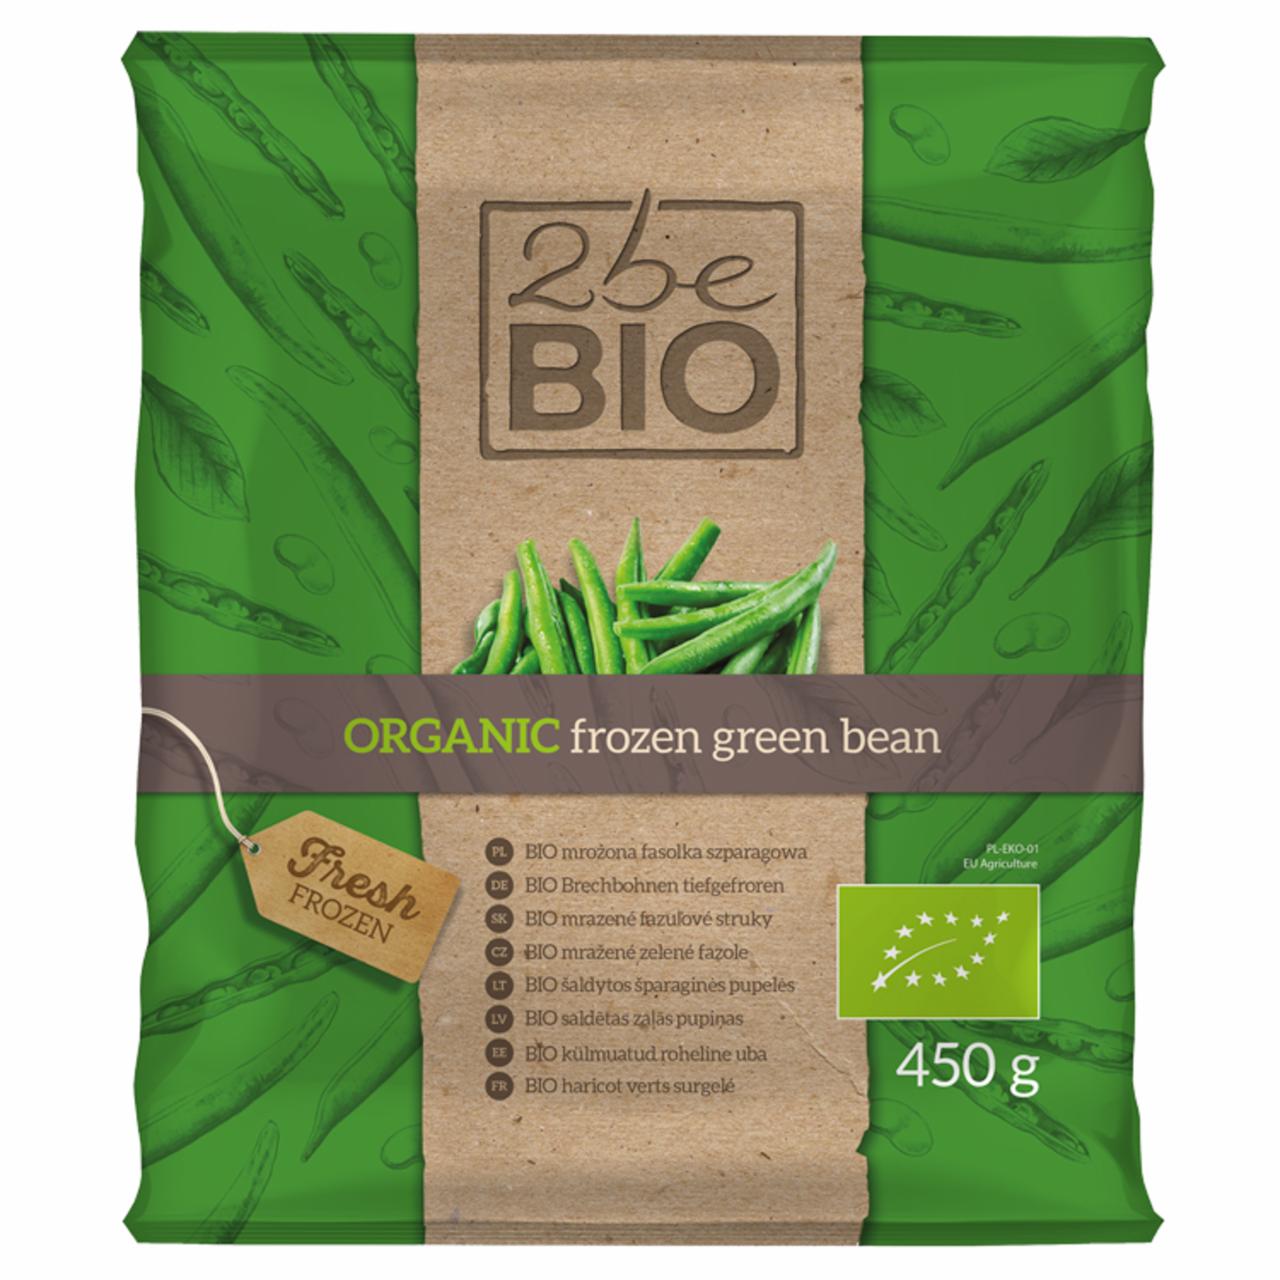 Zdjęcia - 2beBio Bio mrożona fasolka szparagowa 450 g